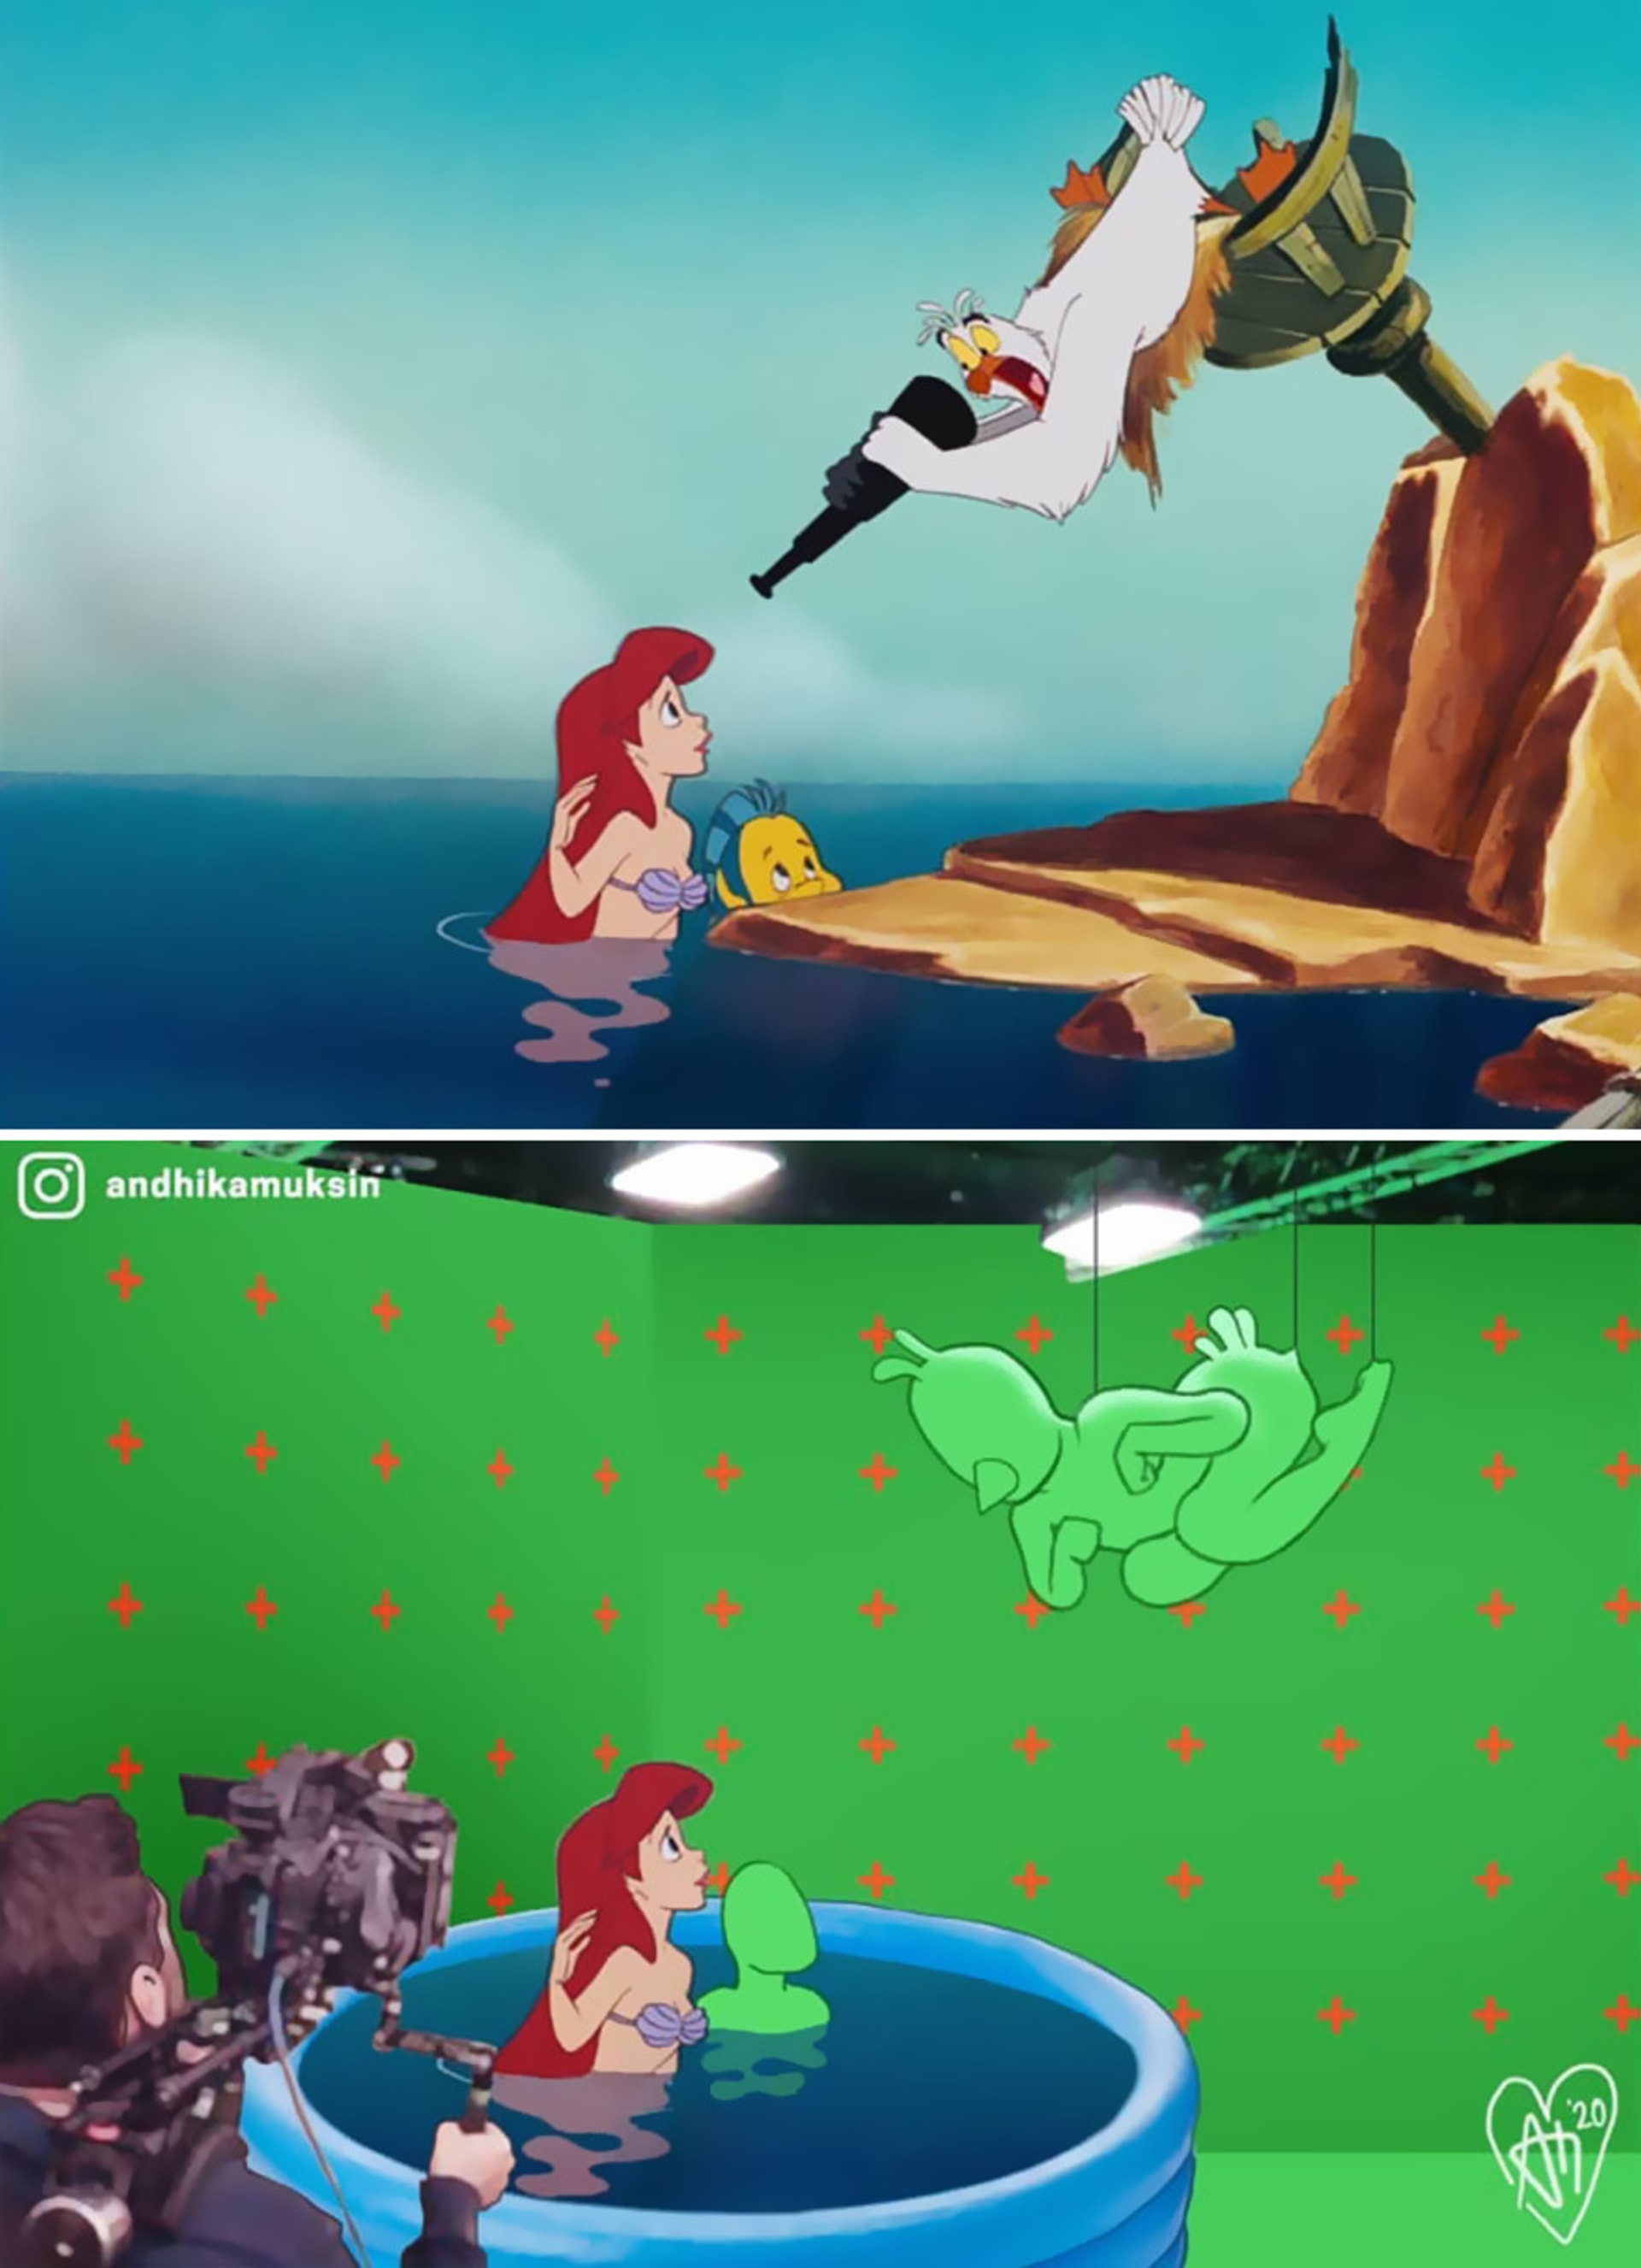 Natáčení pohádek od Disneyho.